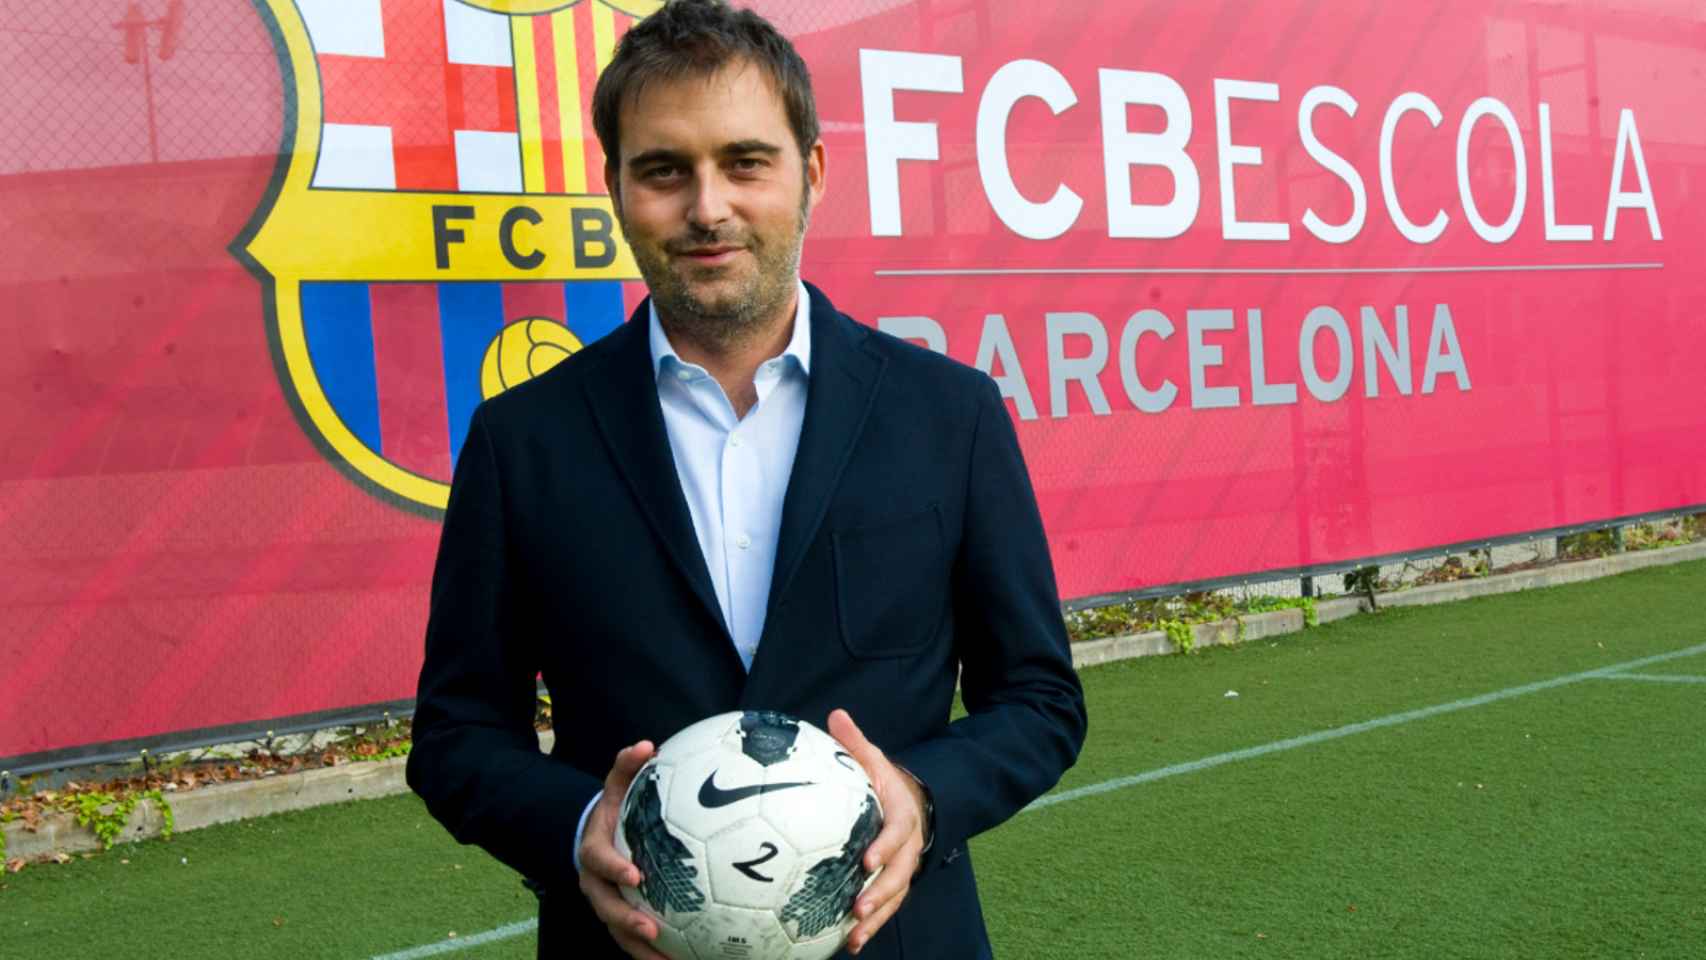 El ejecutivo Franc Carbó posa en una imagen oficial del Barça